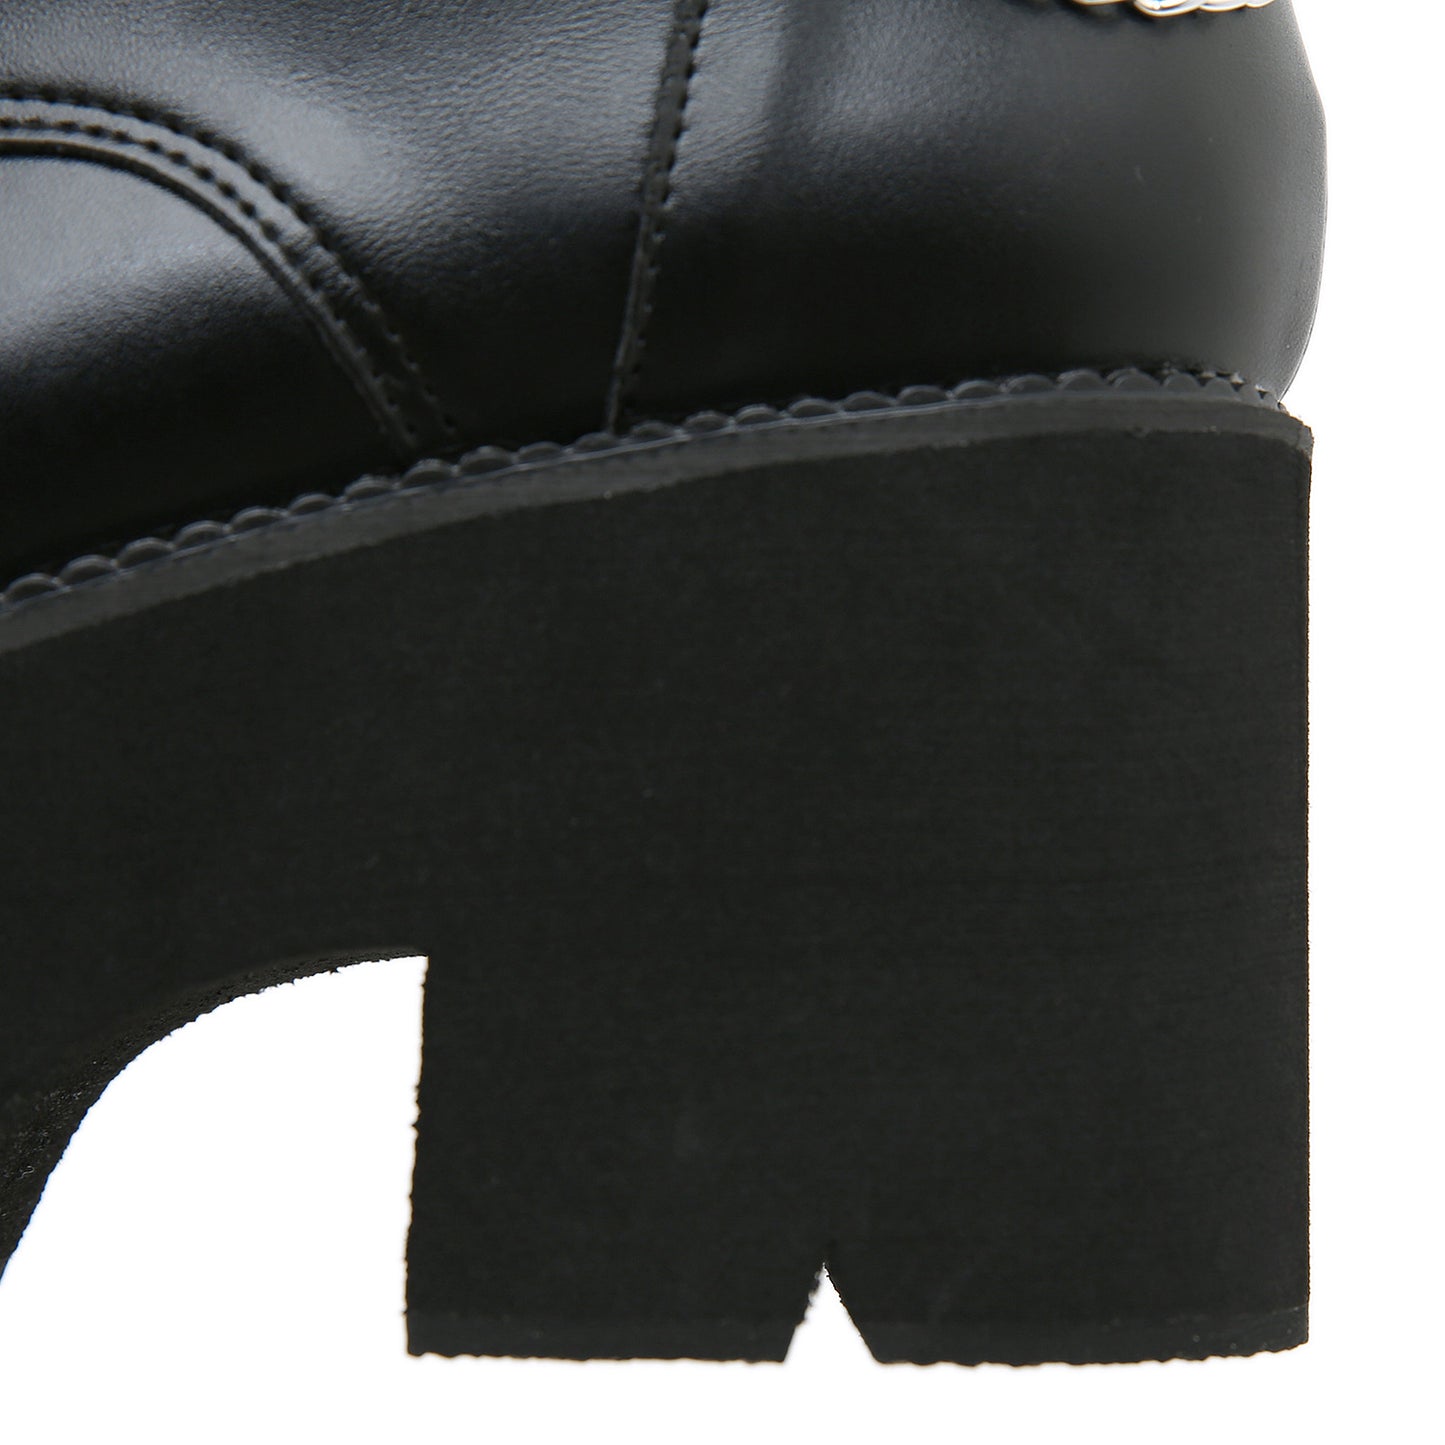 Women's Black High-heeled Dr Martens Boots